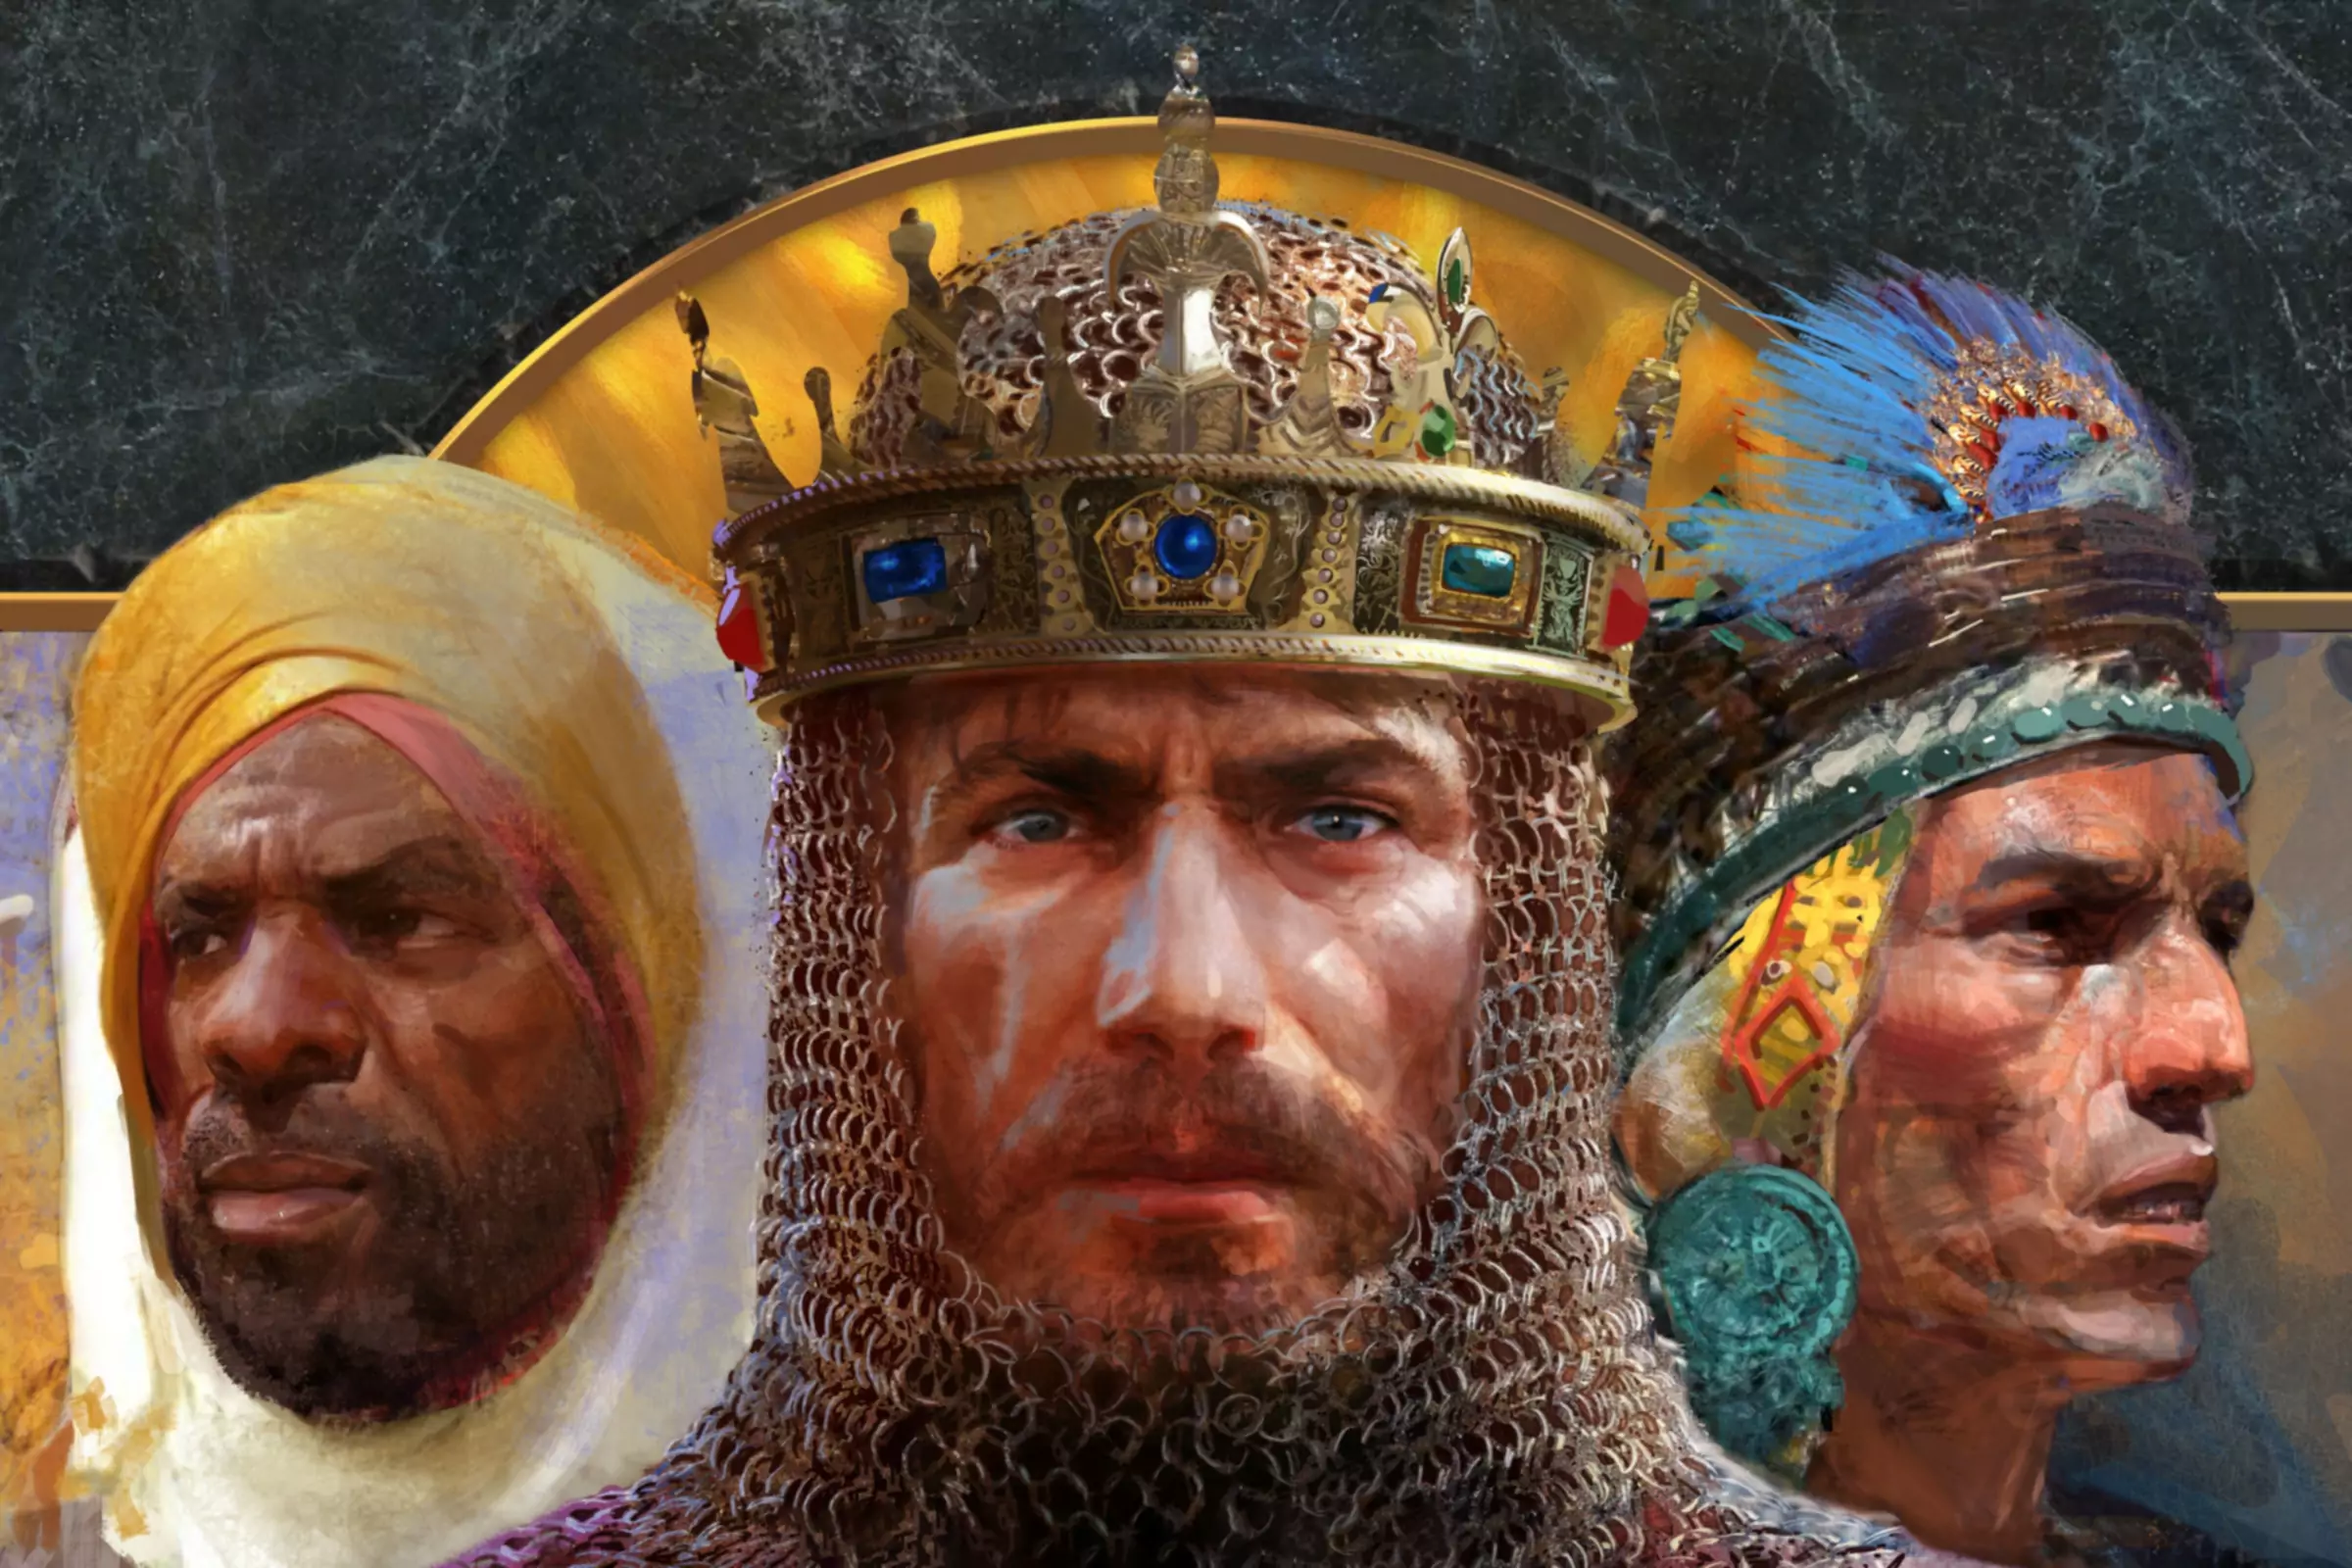 Obálka hry Age of Empires II s historickými postavami.